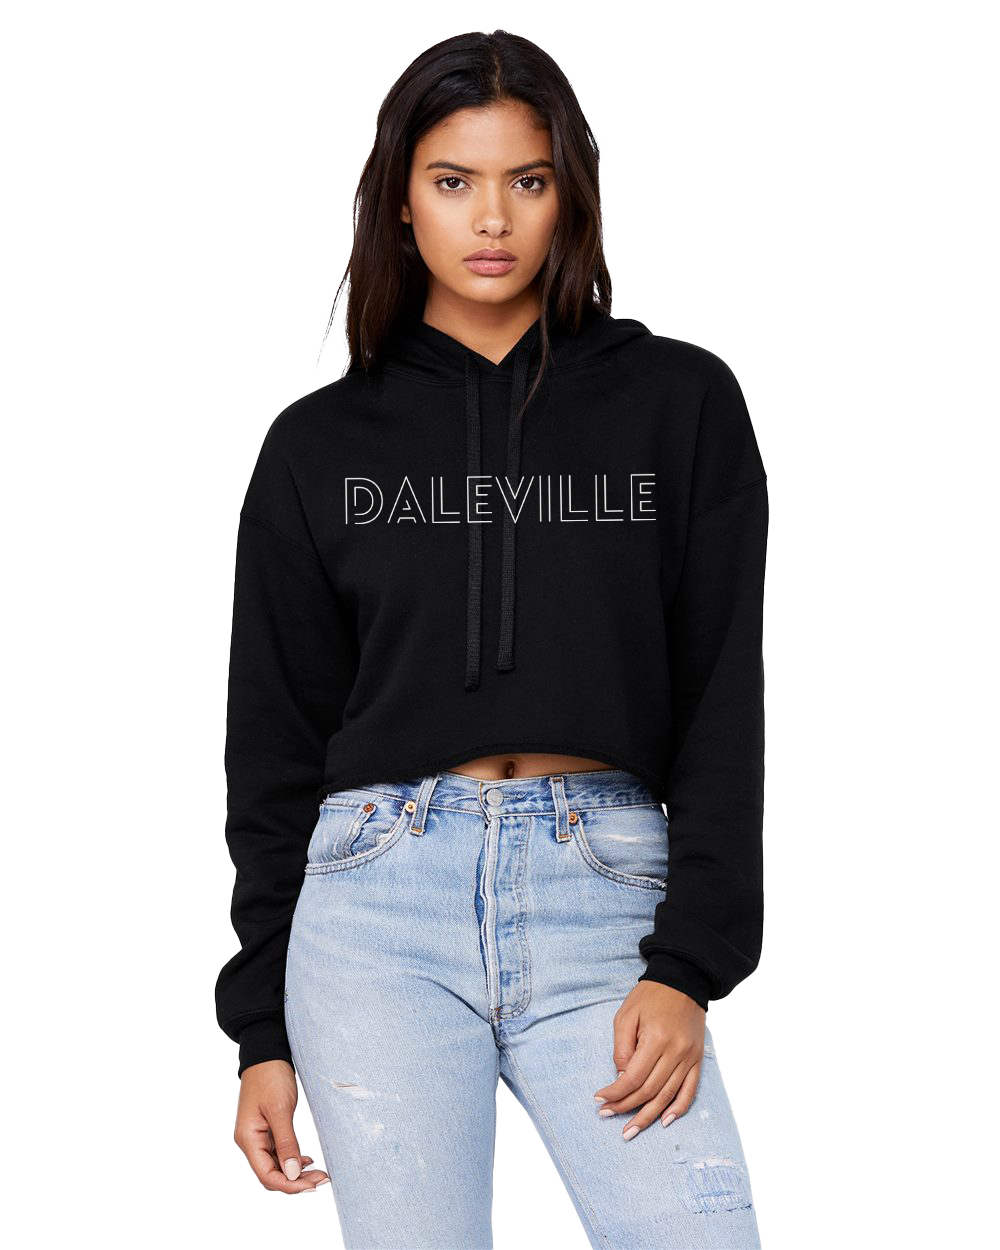 Daleville Broncos Cropped Hooded Sweatshirt - Black